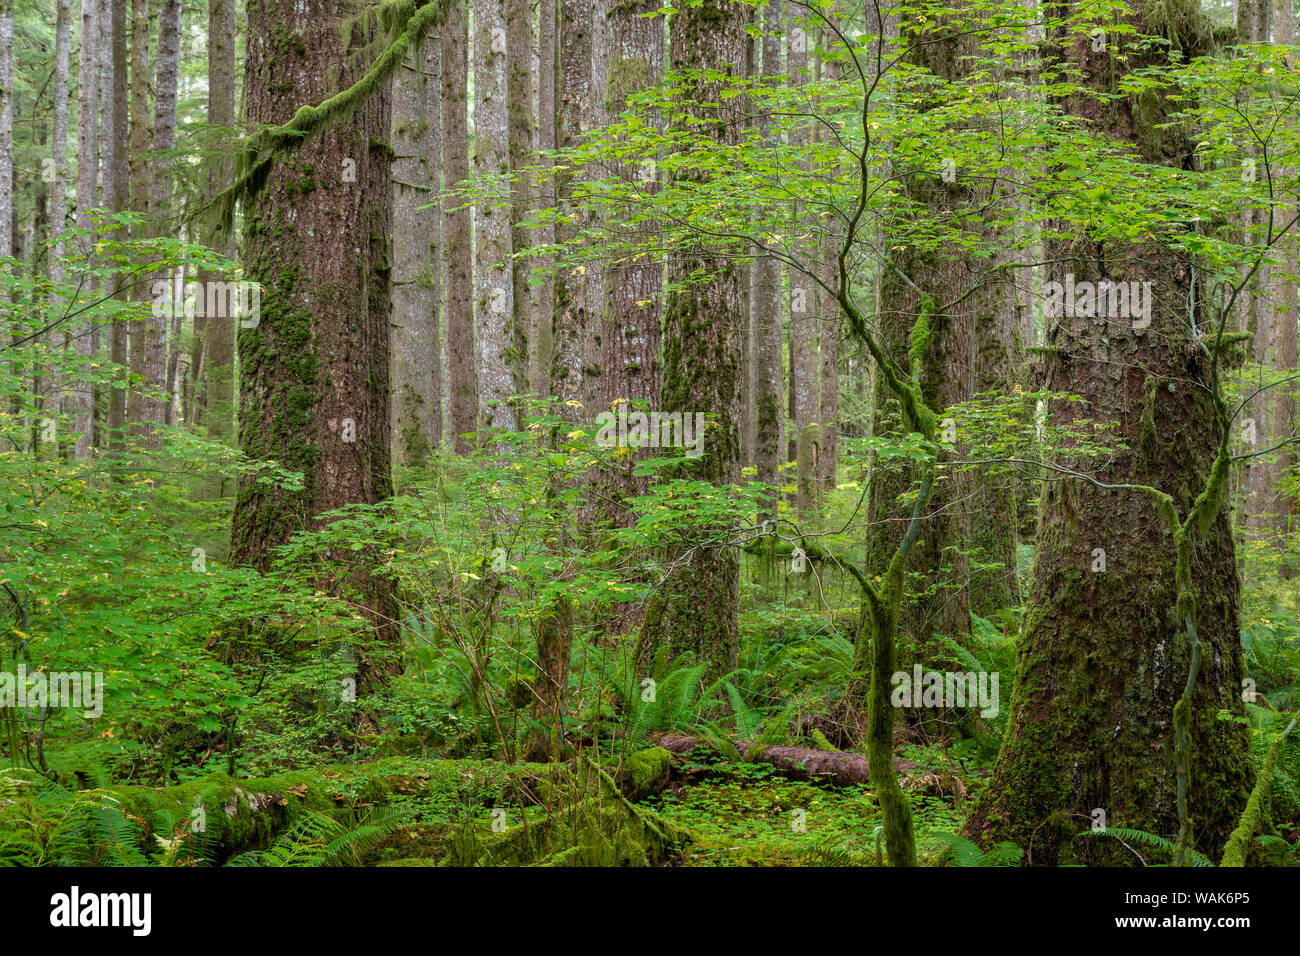 USA, l'État de Washington, l'Olympic National Park. Panoramique de la forêt. En tant que crédit : Don Paulson / Jaynes Gallery / DanitaDelimont.com Banque D'Images